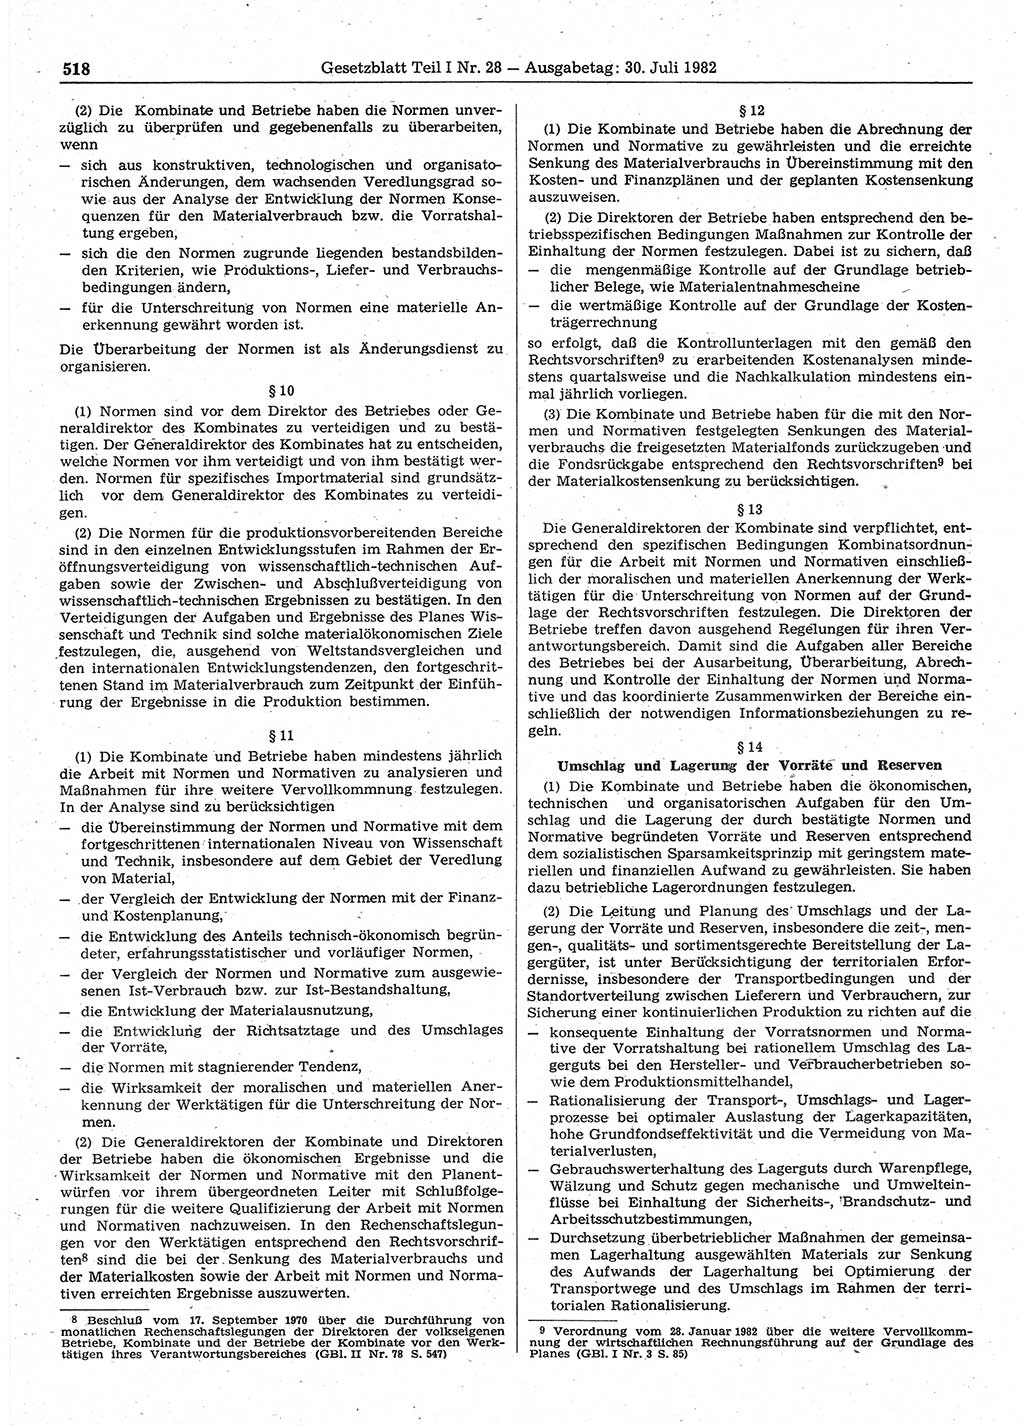 Gesetzblatt (GBl.) der Deutschen Demokratischen Republik (DDR) Teil Ⅰ 1982, Seite 518 (GBl. DDR Ⅰ 1982, S. 518)